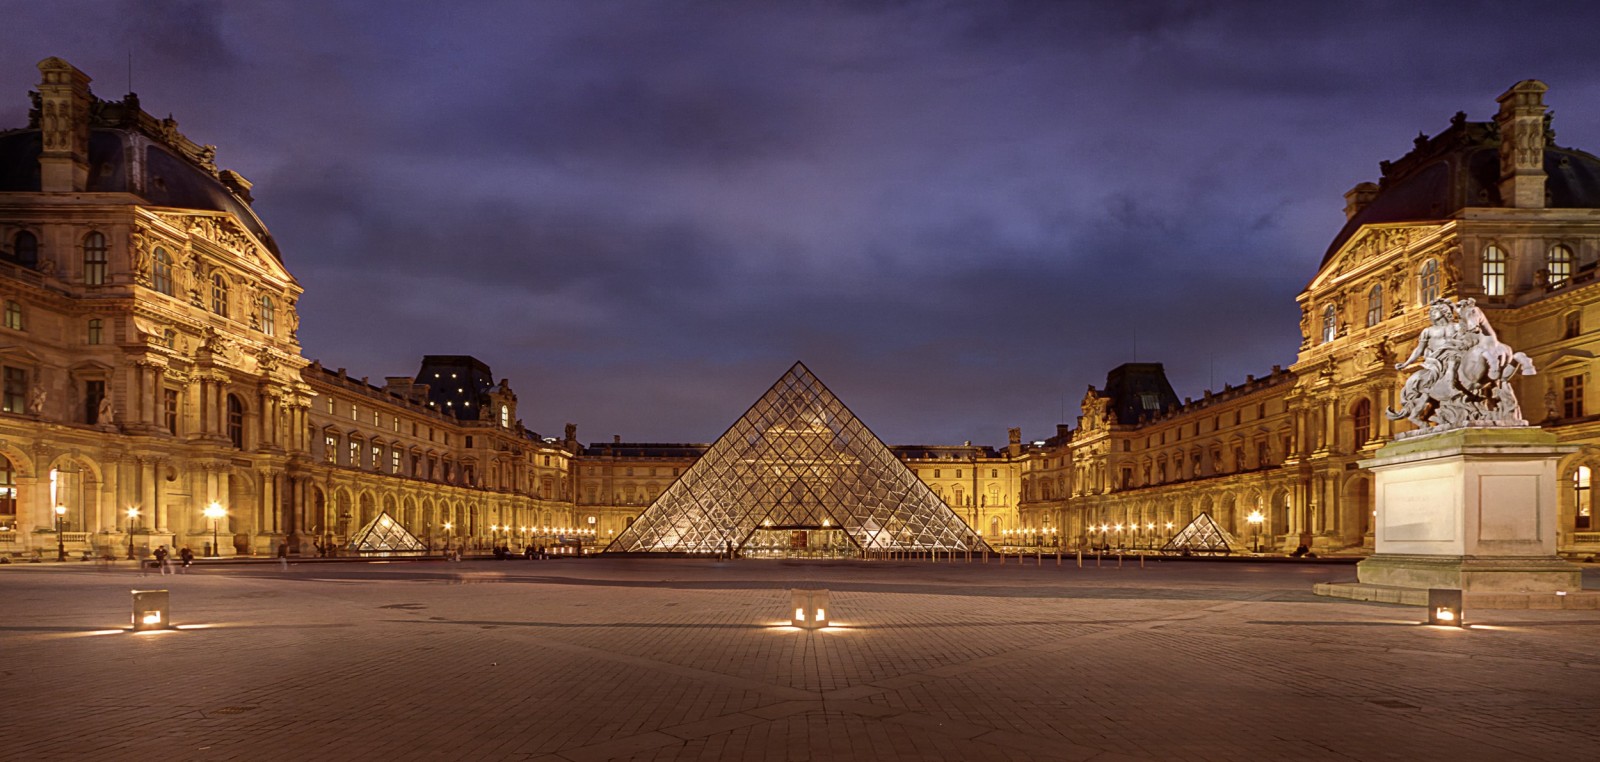 La louvre. Дворец-музей Лувр в Париже. Королевский дворец Лувр в Париже. Королевская резиденция Лувр.